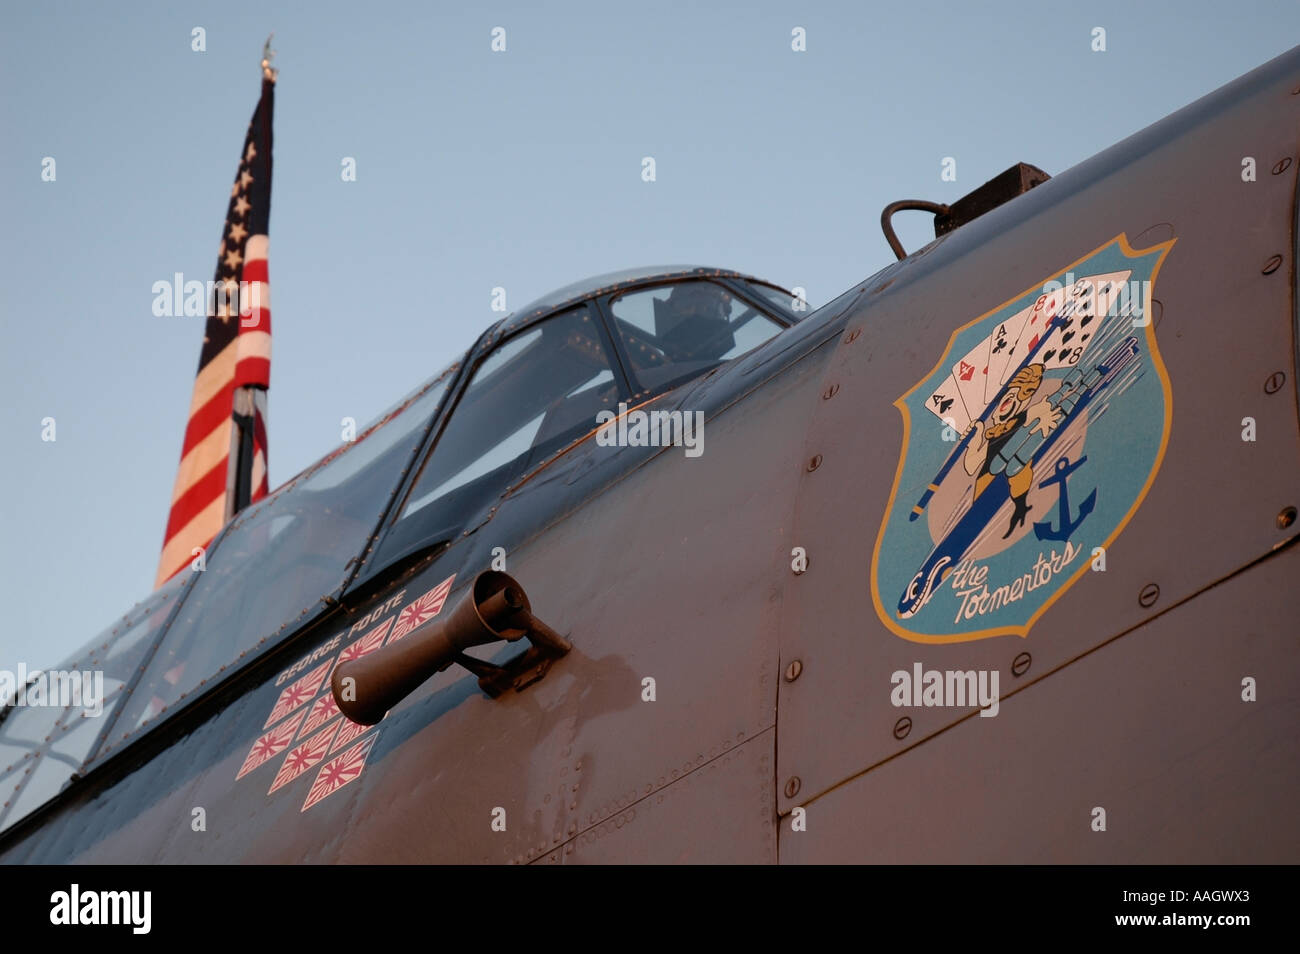 Abzeichen auf der Nase von einem amerikanischen WW2 Kampfflugzeugen liest "Der Peiniger". Stockfoto